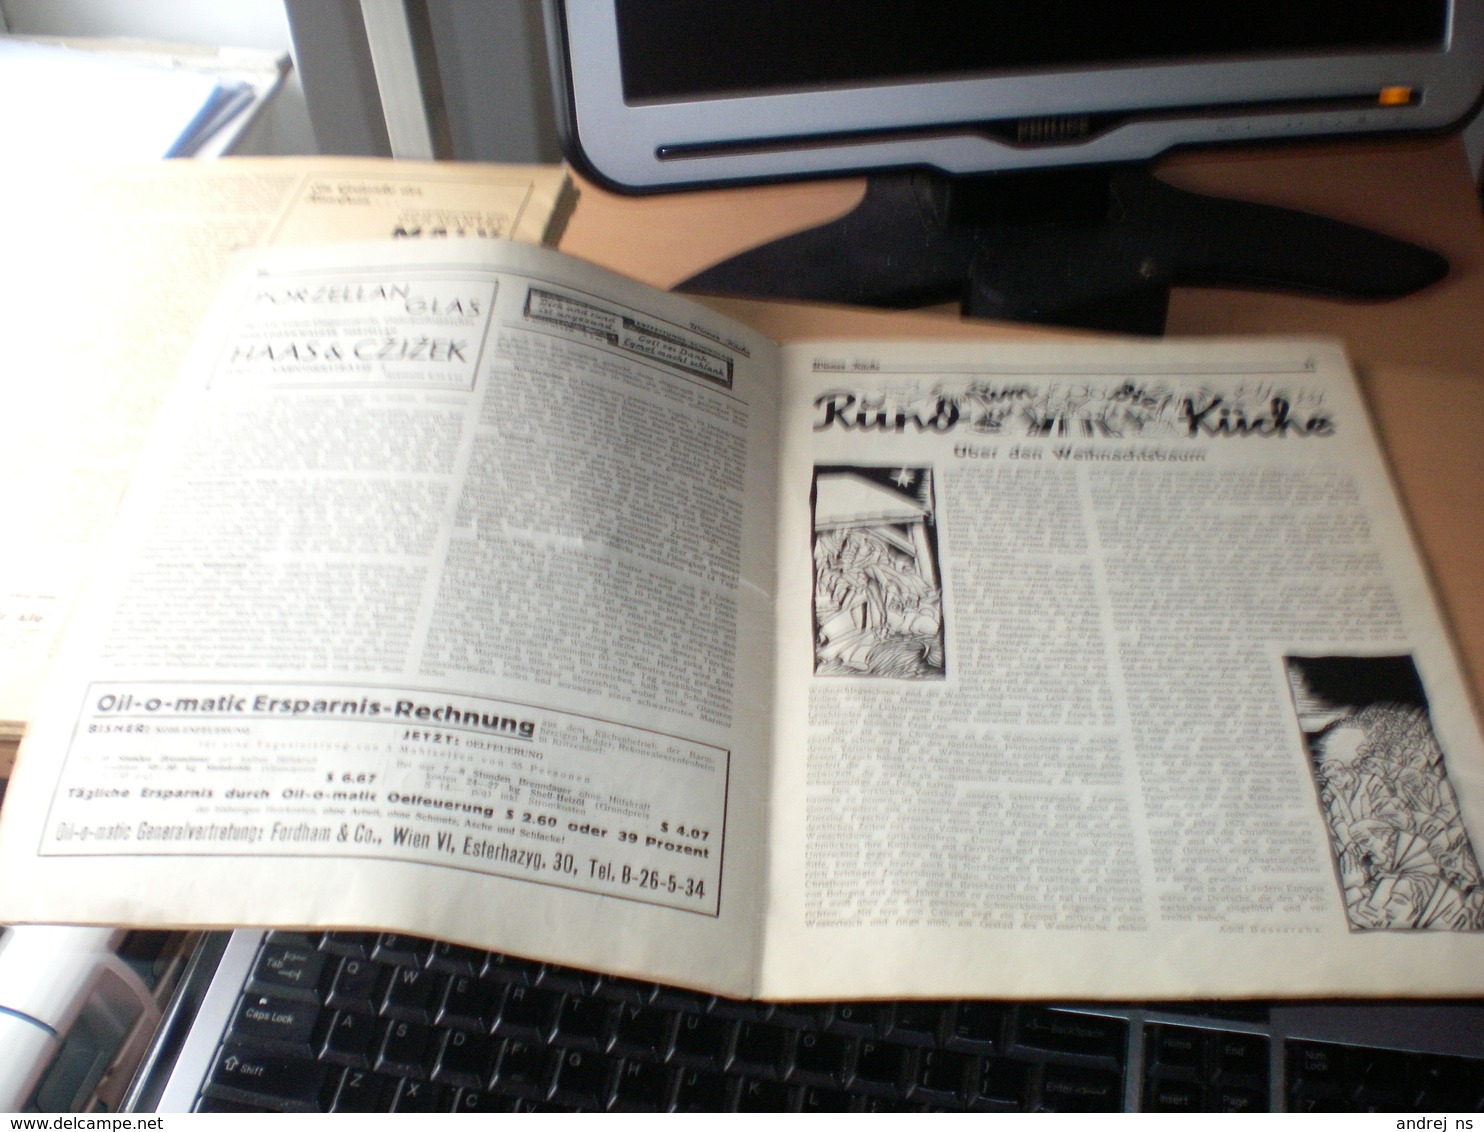 Wiener Kuche Herausgegeben Von Kuchenchef Franz Ruhm Nr 62 Wien 1935 24 Pages - Food & Drinks